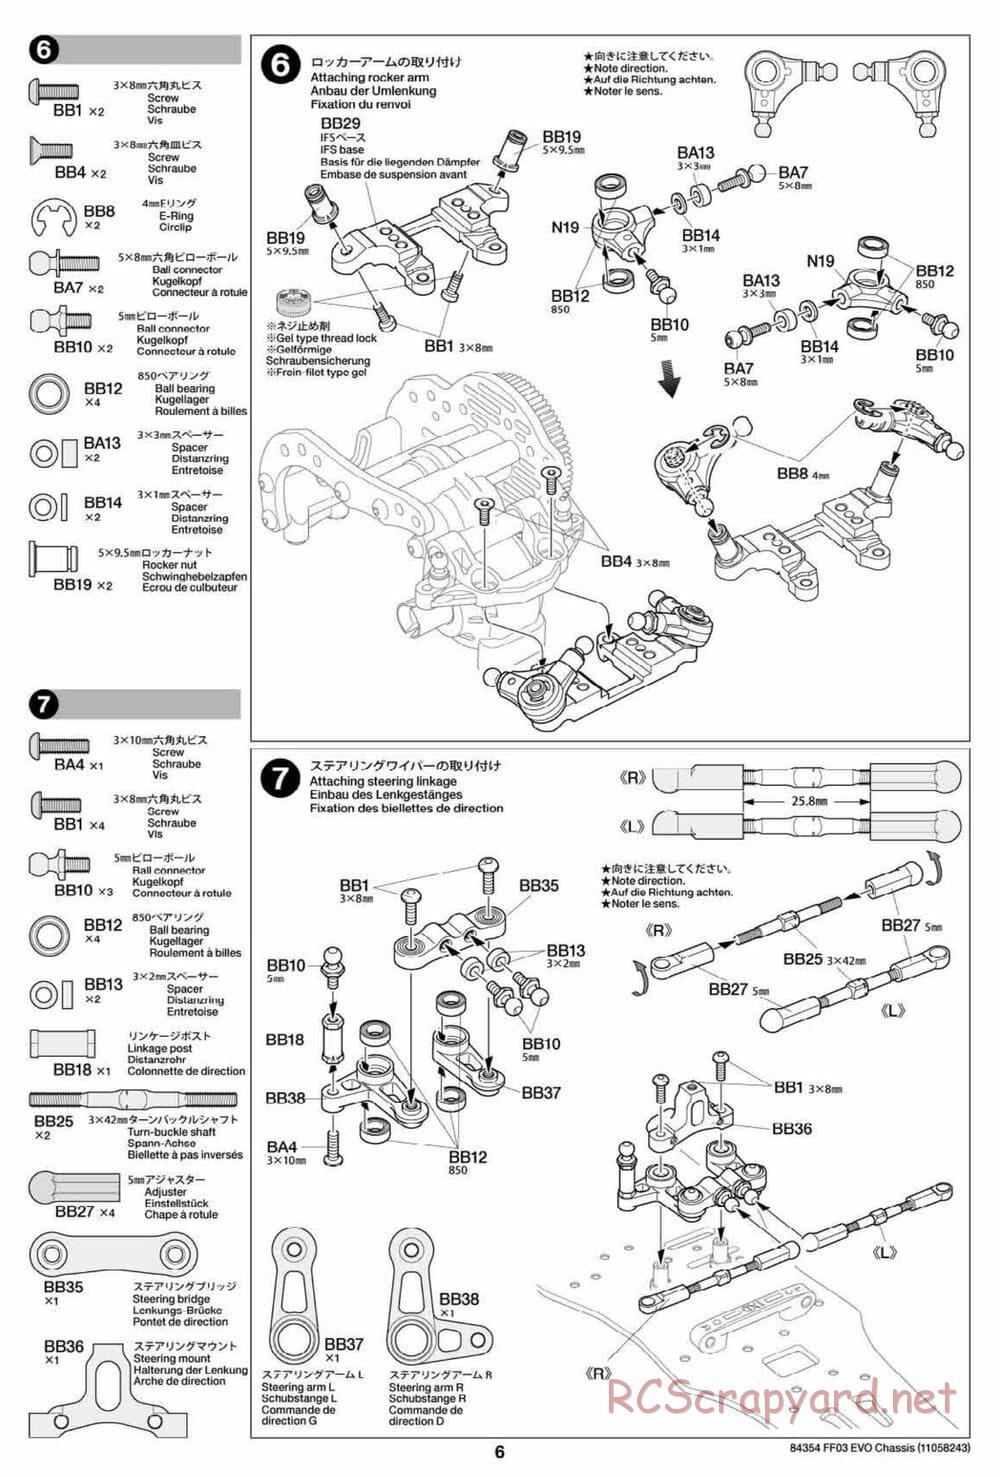 Tamiya - FF-03 Evo Chassis - Manual - Page 6